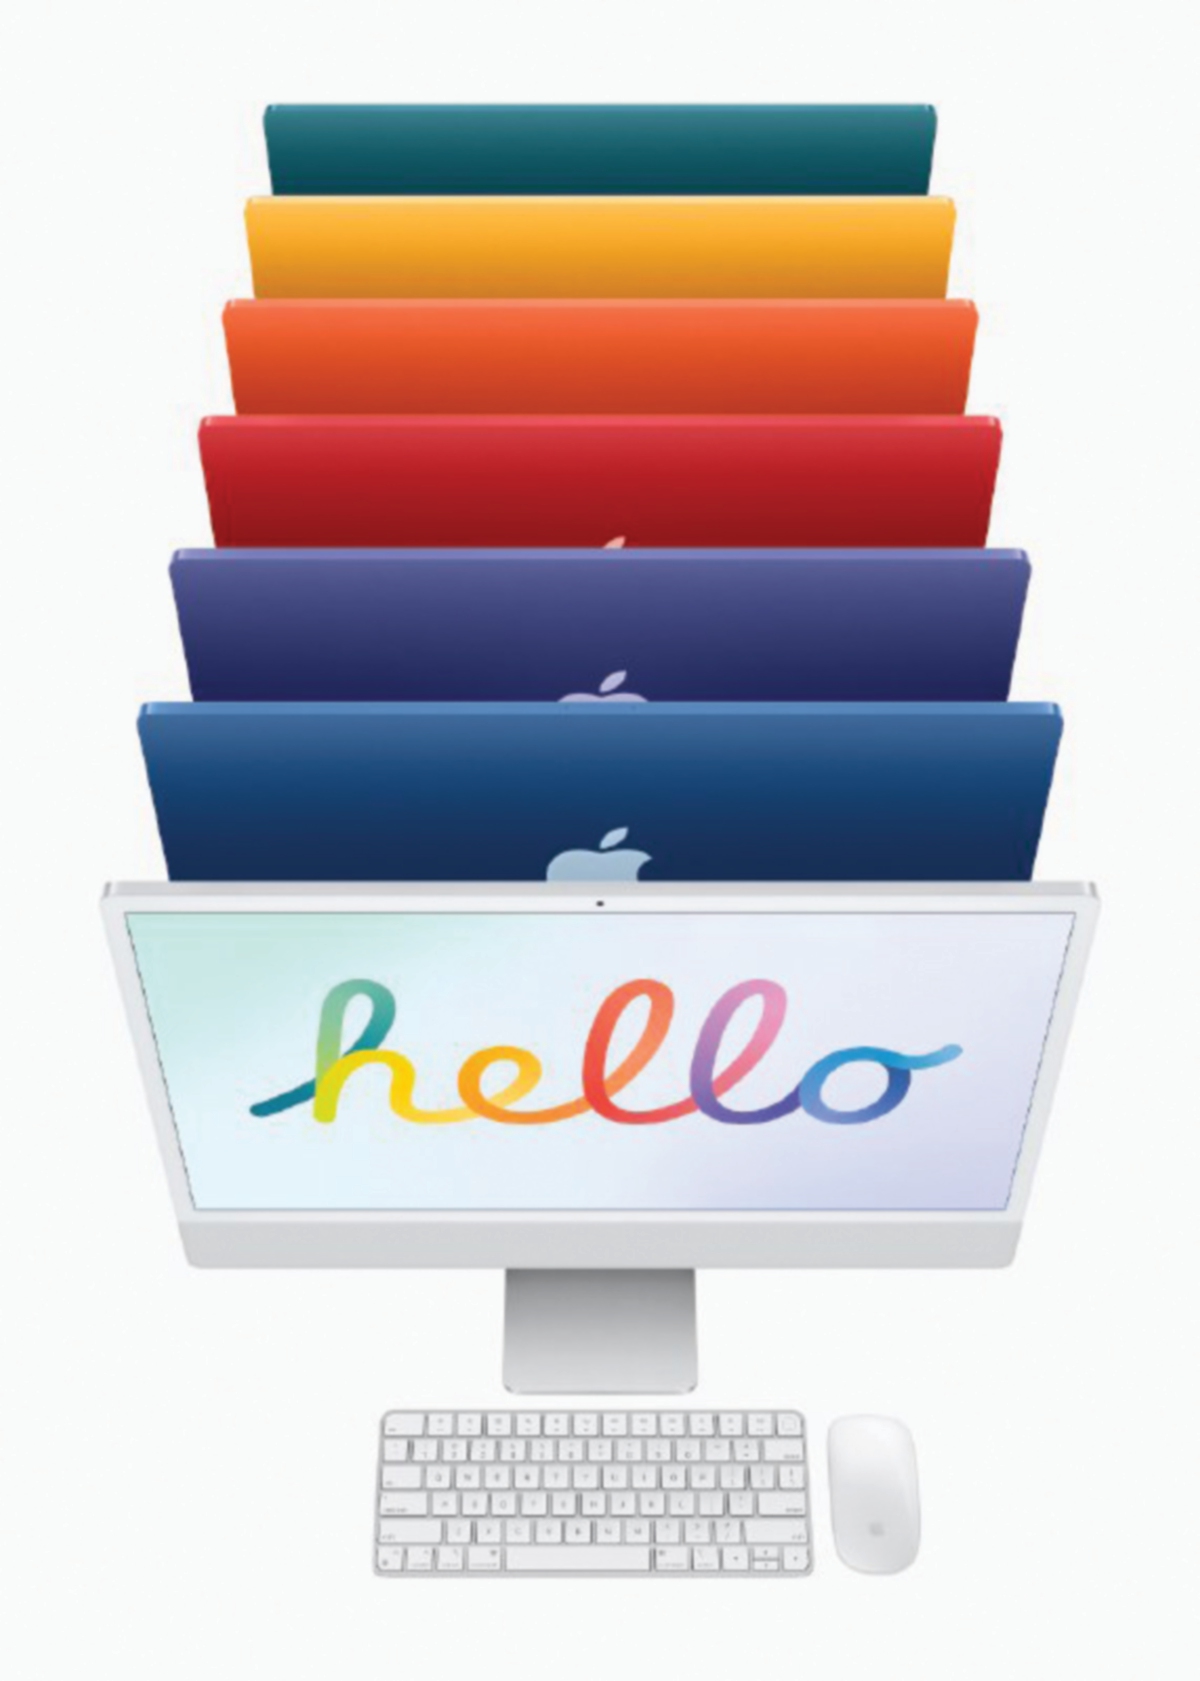 iMac versi 2021 menawarkan tujuh warna vibran untuk pengguna.